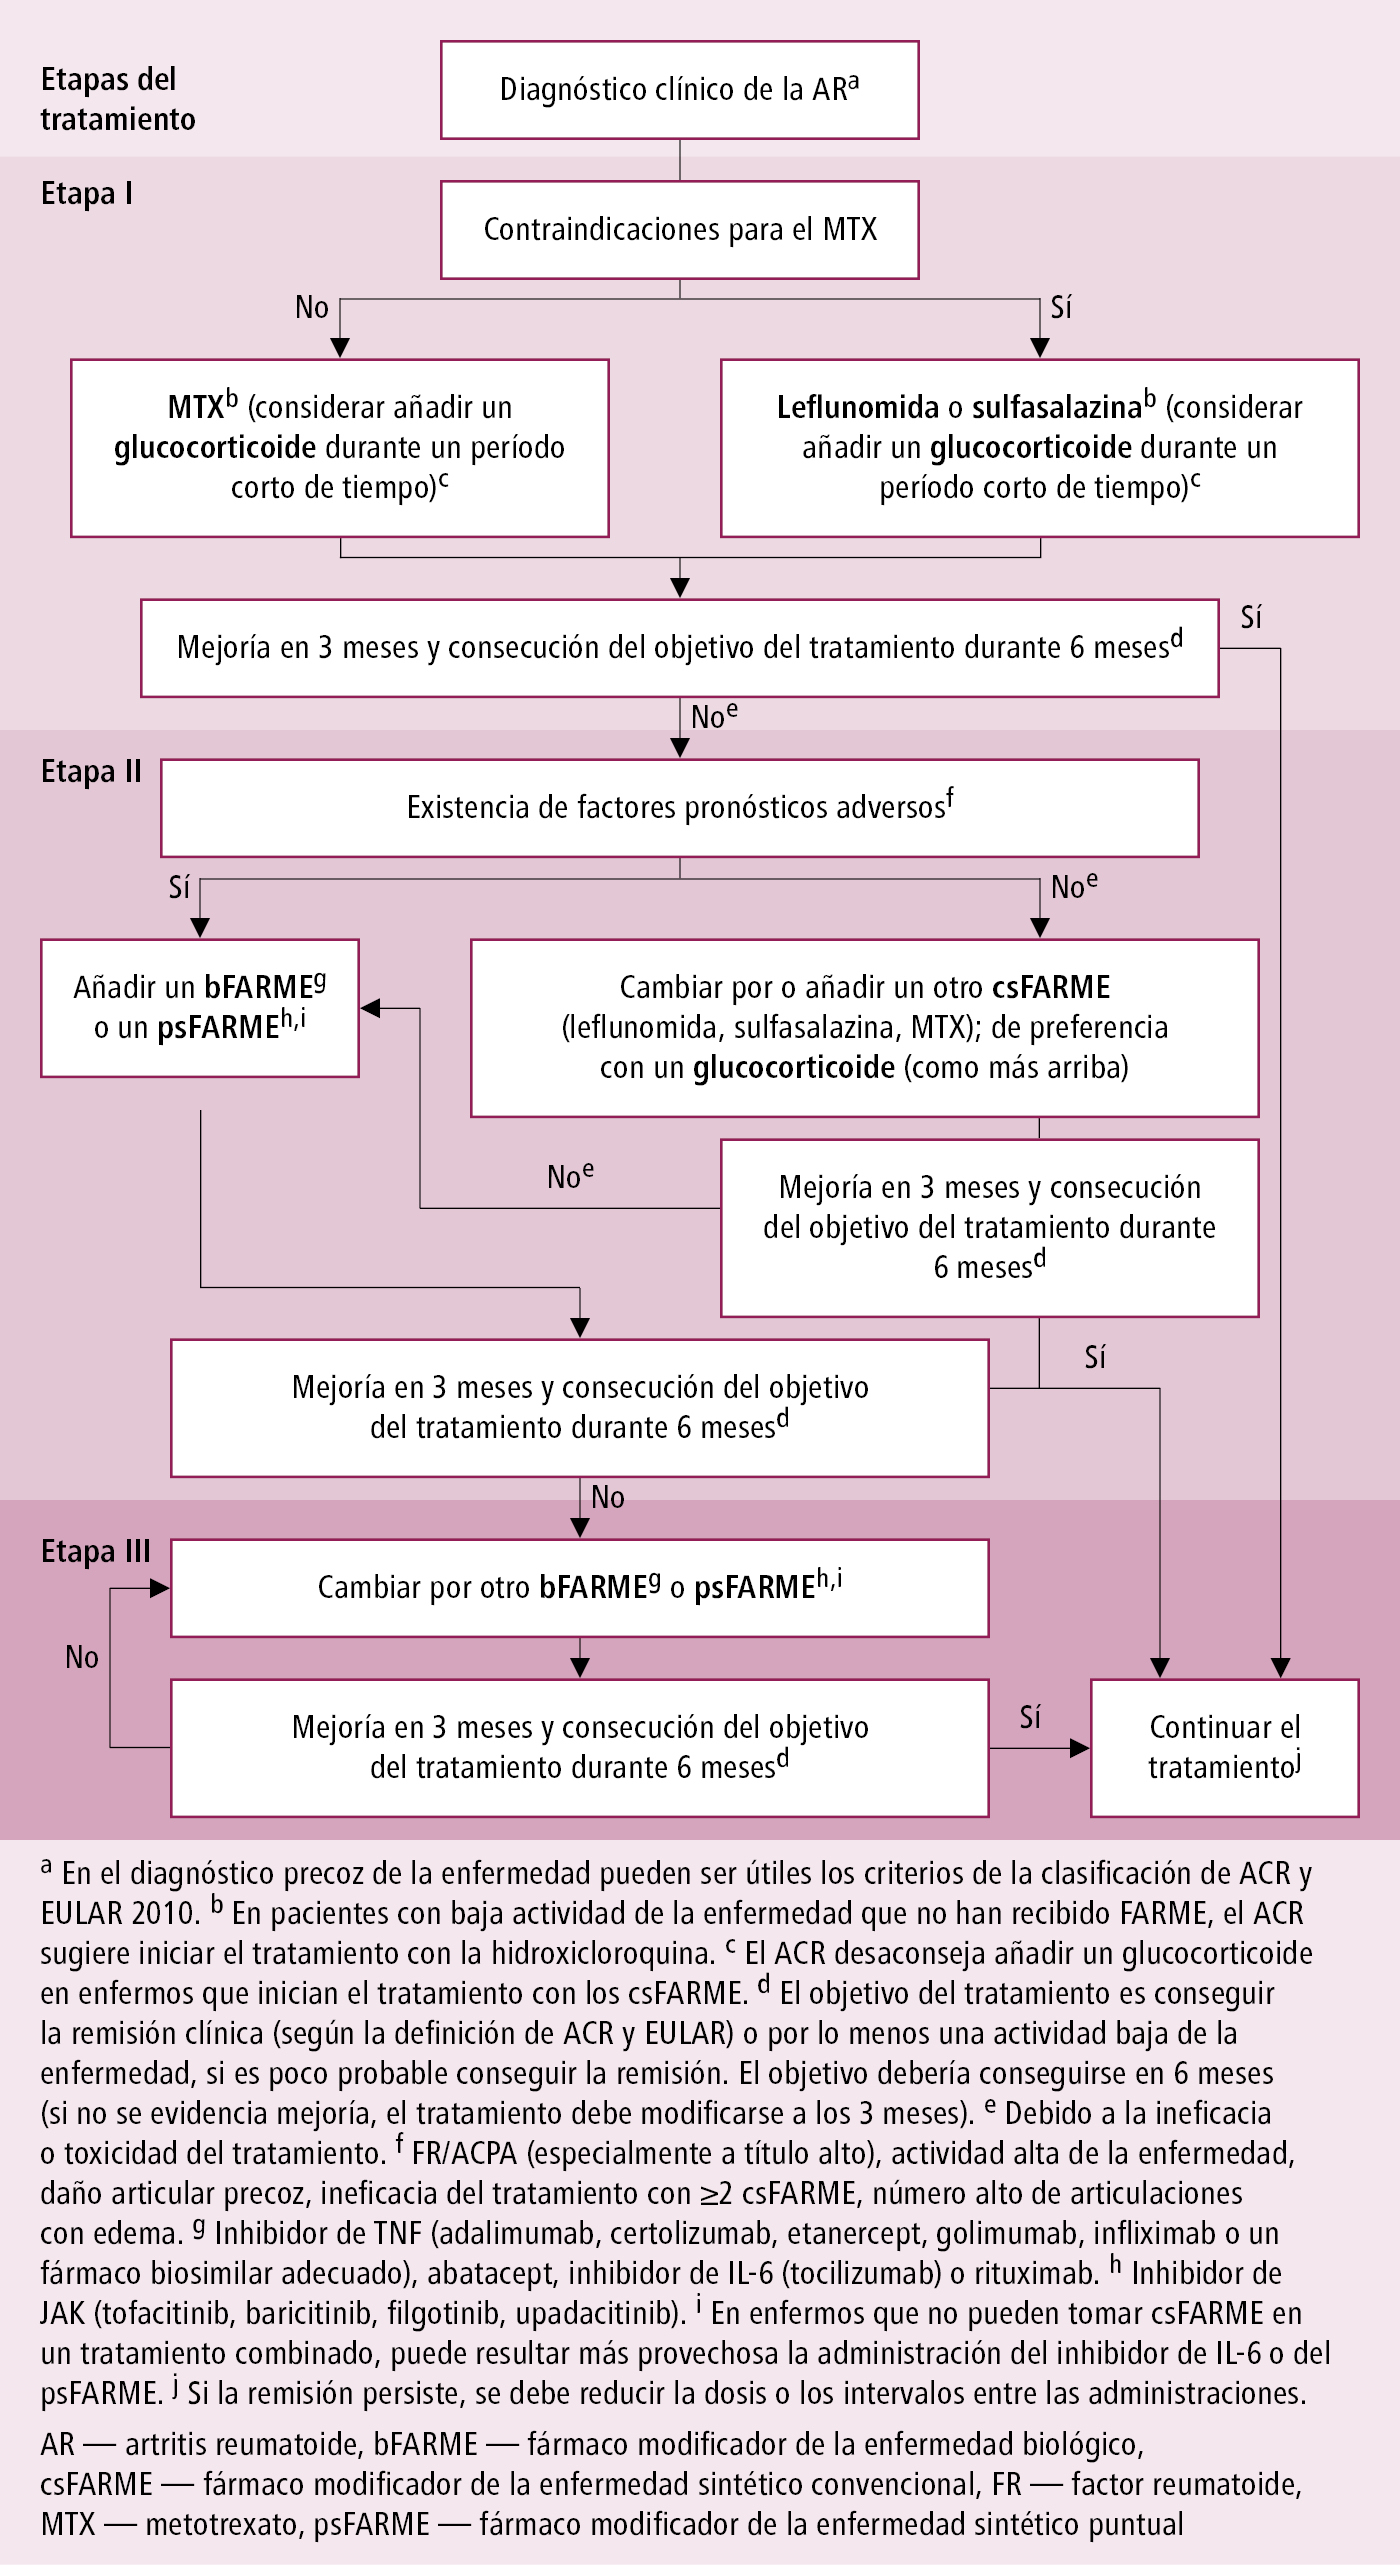    Fig. 17.1-2.  Algoritmo del tratamiento de la AR recomendado por la EULAR (2019, modificado) 